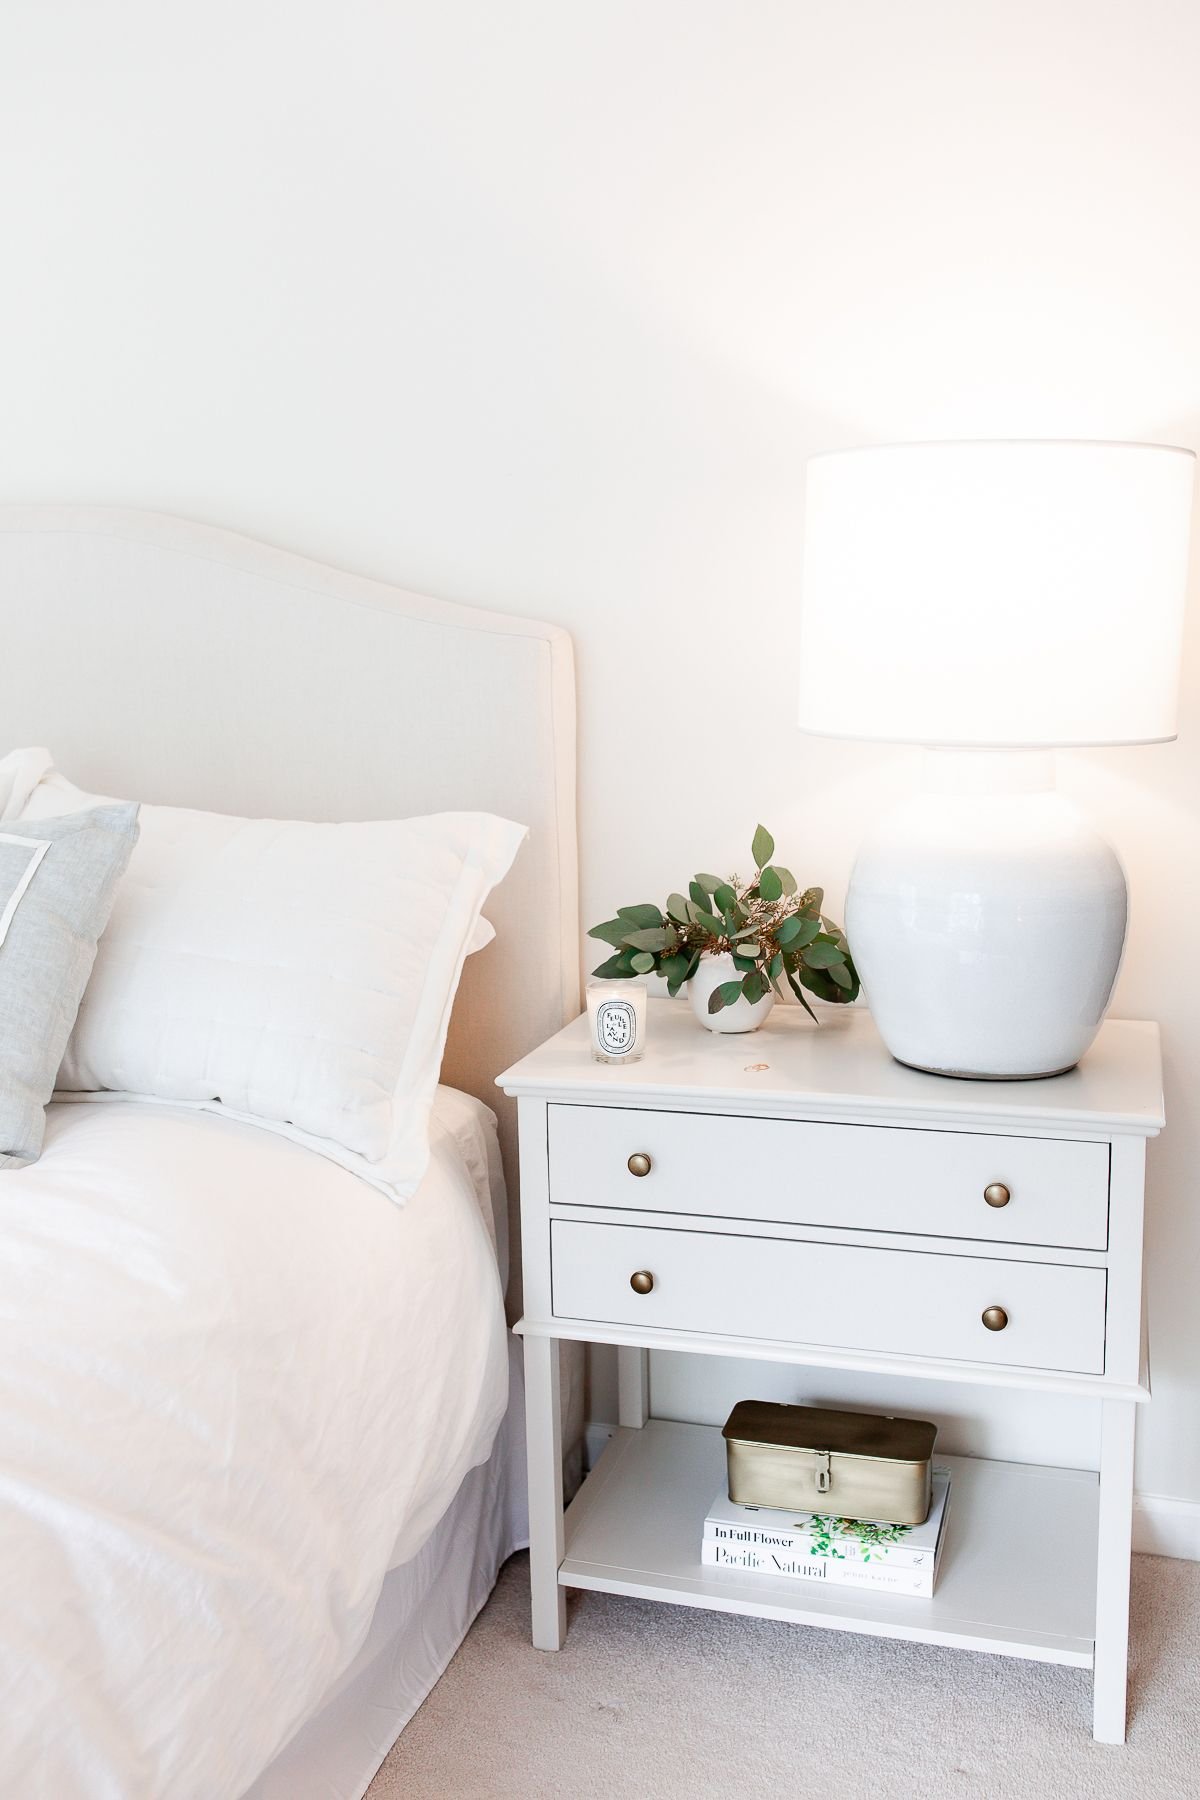 Nightstand decor in a cream bedroom